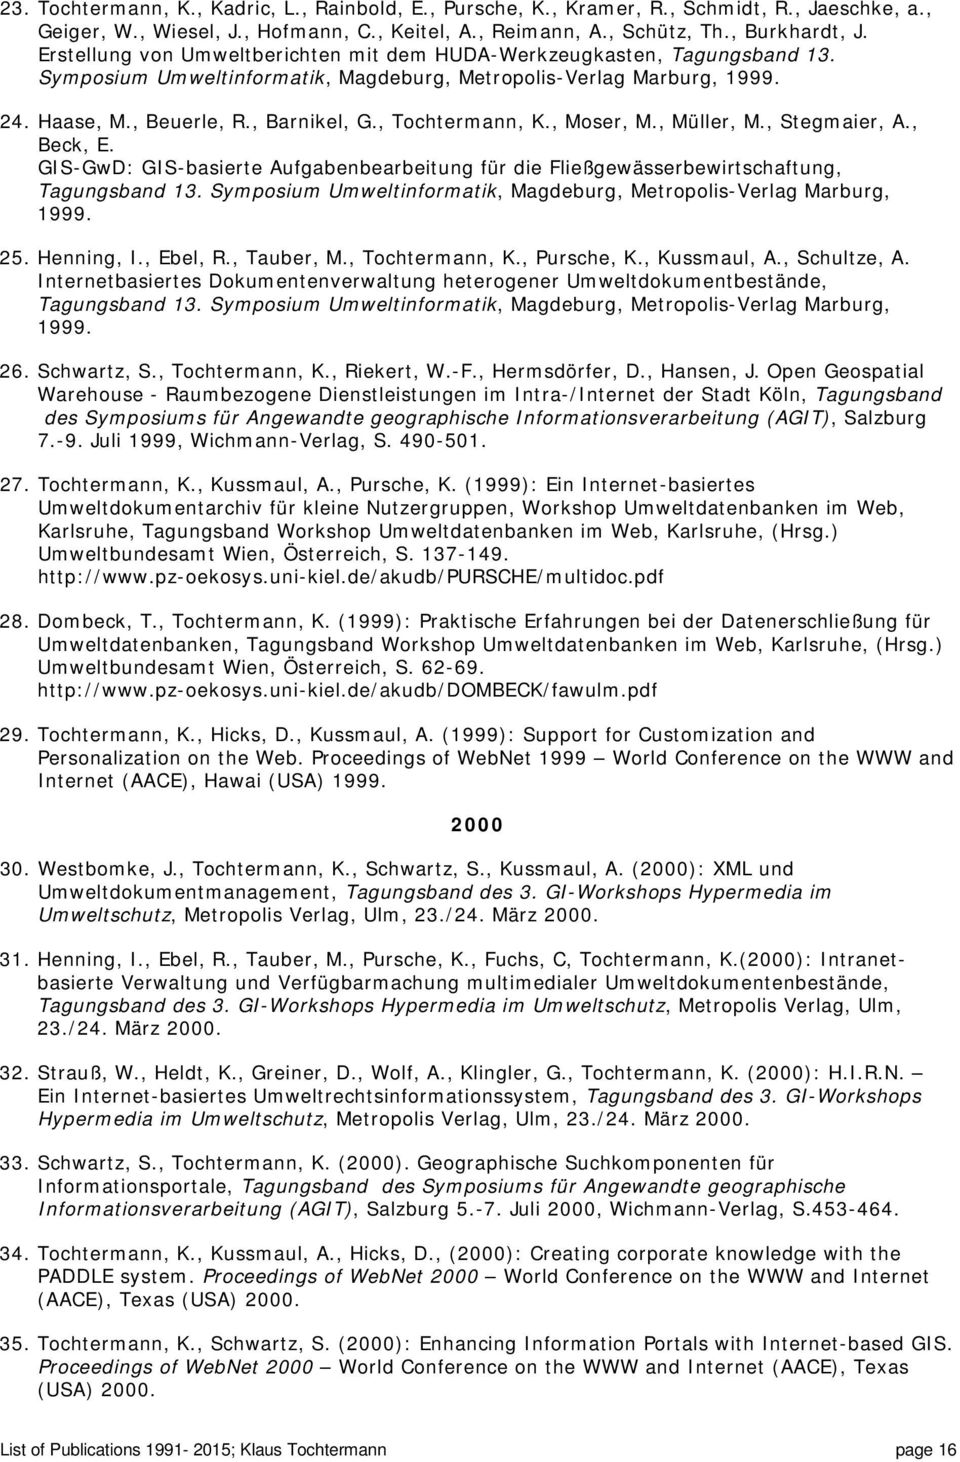 , Tochtermann, K., Moser, M., Müller, M., Stegmaier, A., Beck, E. GIS-GwD: GIS-basierte Aufgabenbearbeitung für die Fließgewässerbewirtschaftung, Tagungsband 13.